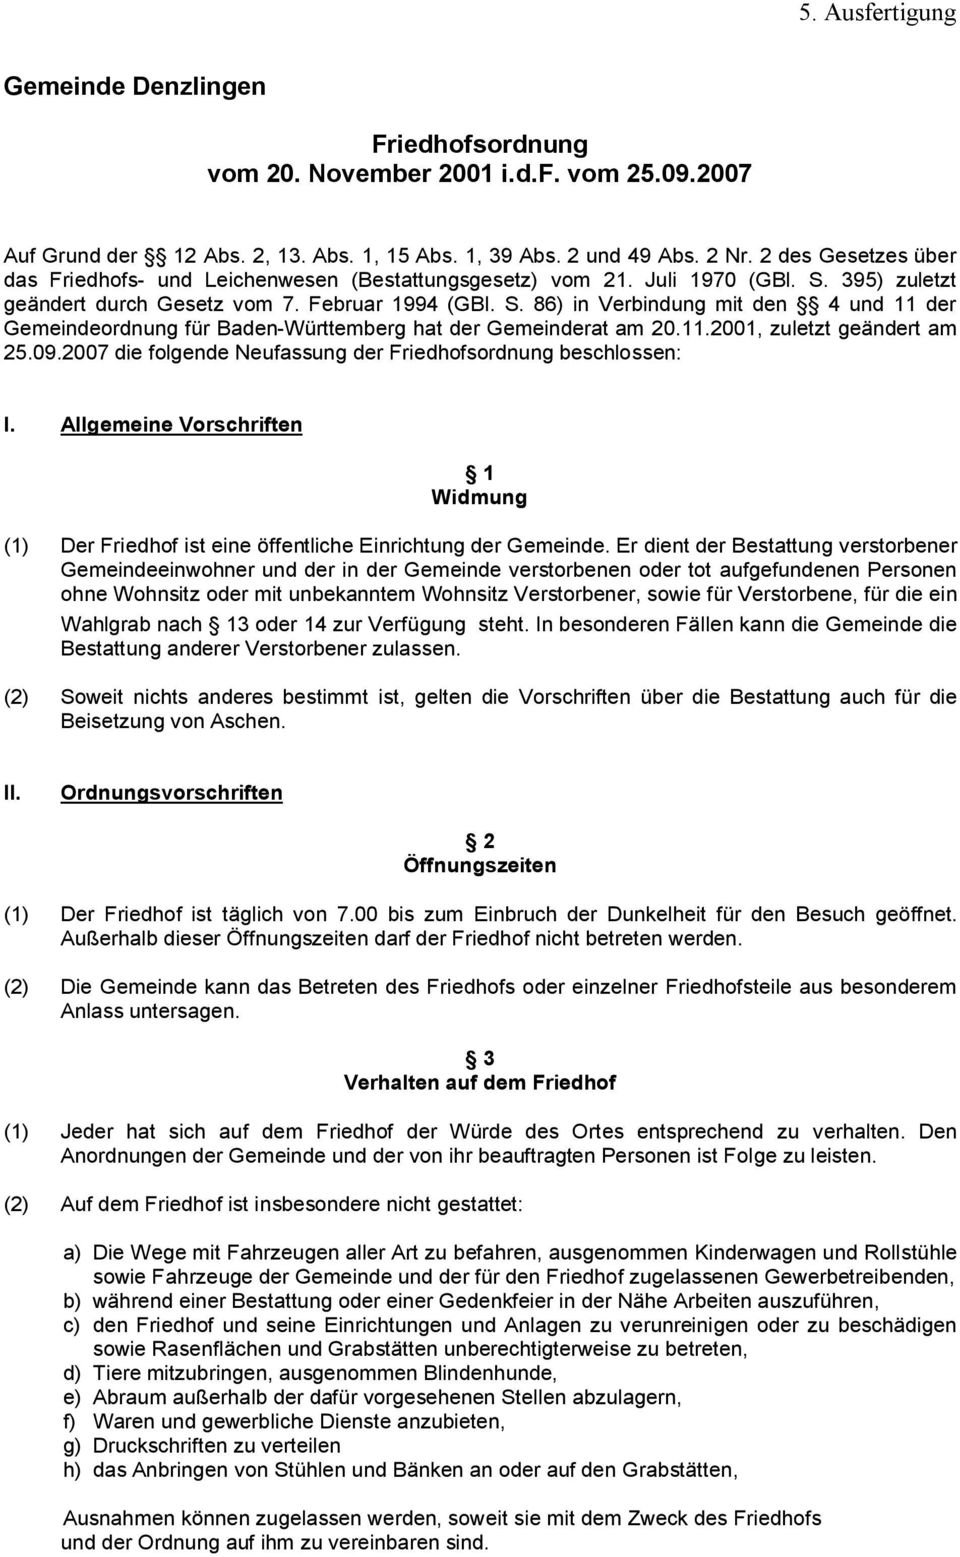 395) zuletzt geändert durch Gesetz vom 7. Februar 1994 (GBl. S. 86) in Verbindung mit den 4 und 11 der Gemeindeordnung für Baden-Württemberg hat der Gemeinderat am 20.11.2001, zuletzt geändert am 25.